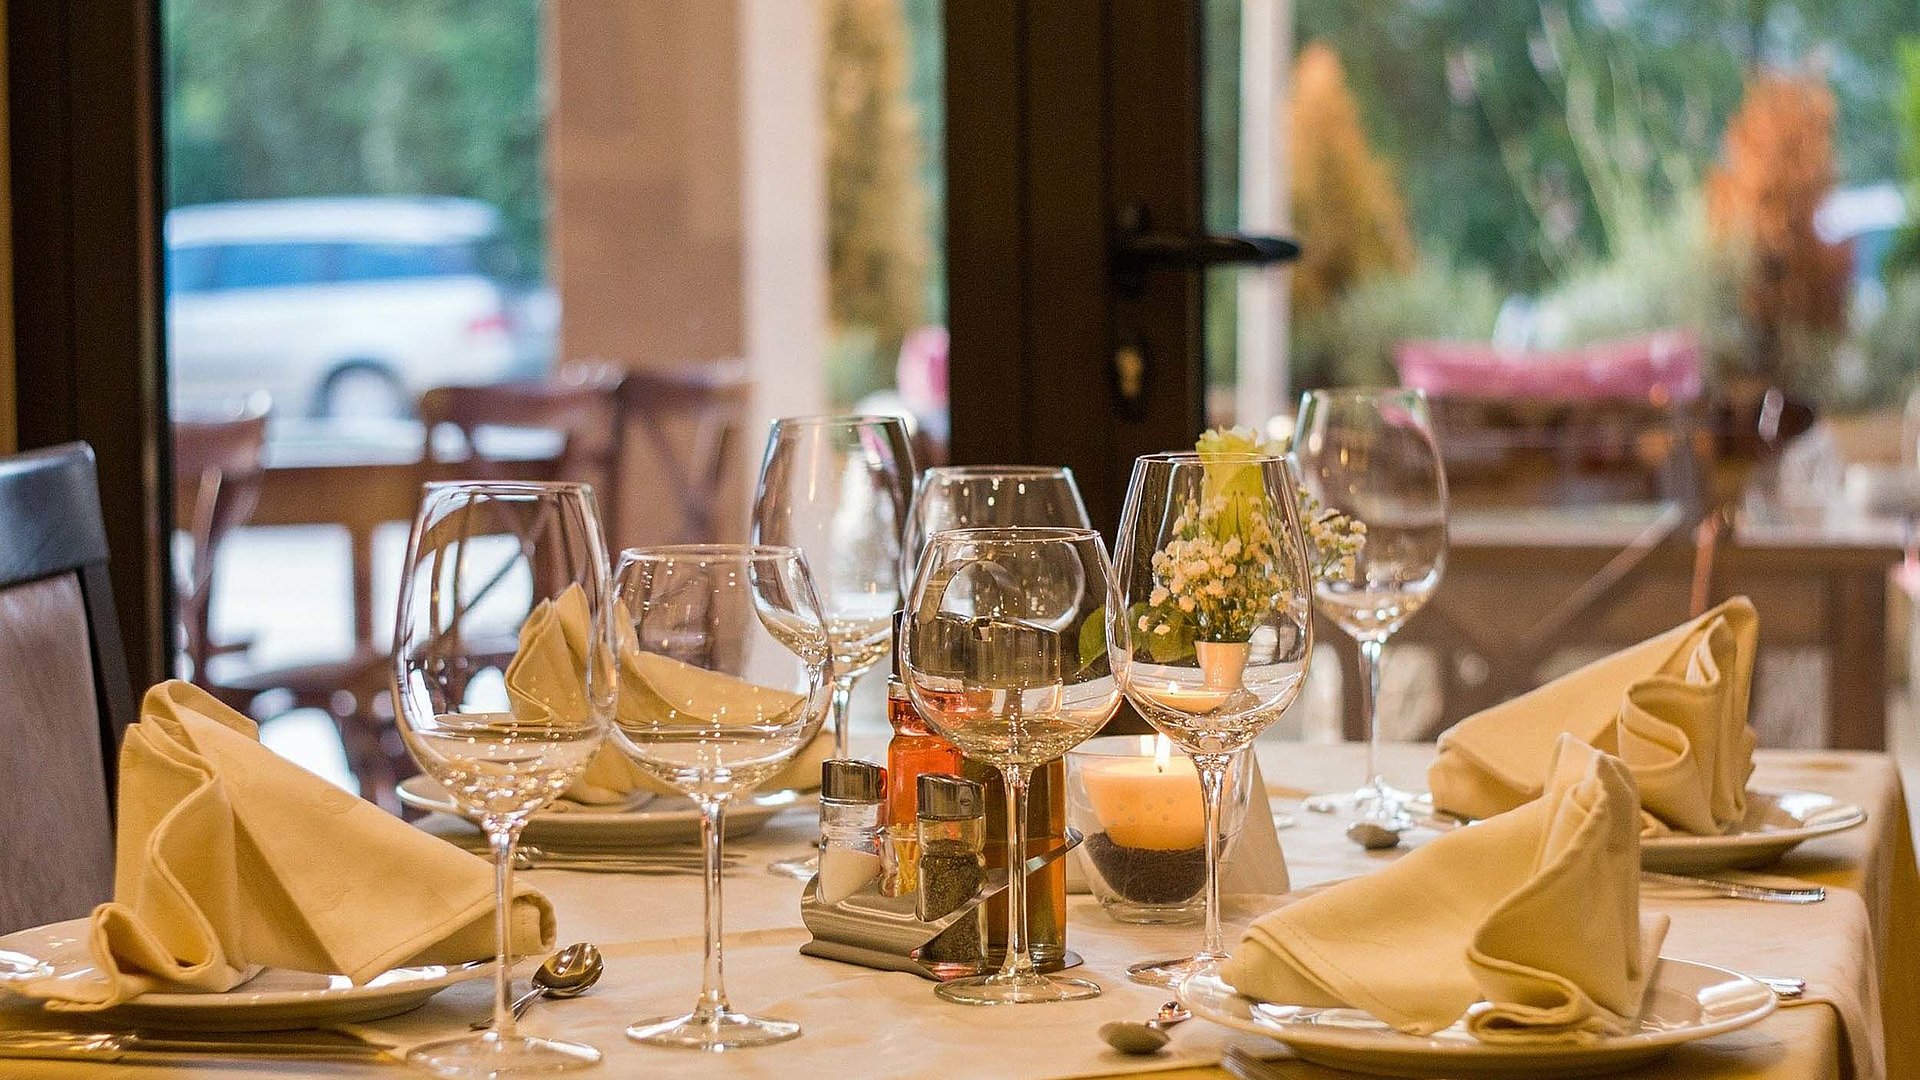 Gastronomie für Gruppen in Kempten im Allgäu - im Restaurant; bedeckter Tisch mit Weingläsern